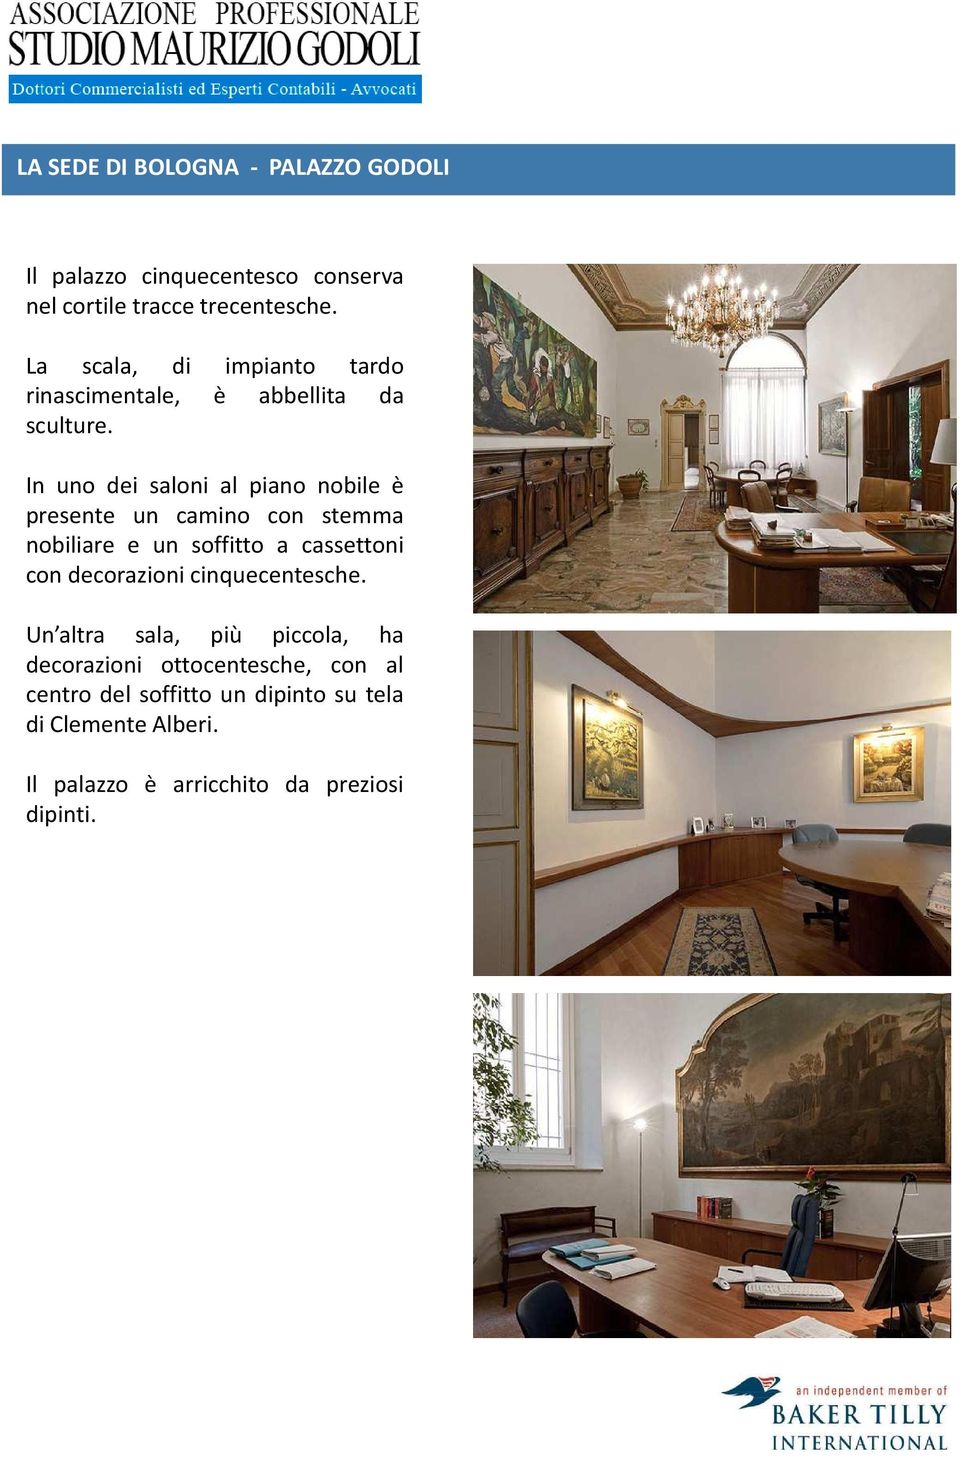 In uno dei saloni al piano nobile è presente un camino con stemma nobiliare e un soffitto a cassettoni con decorazioni